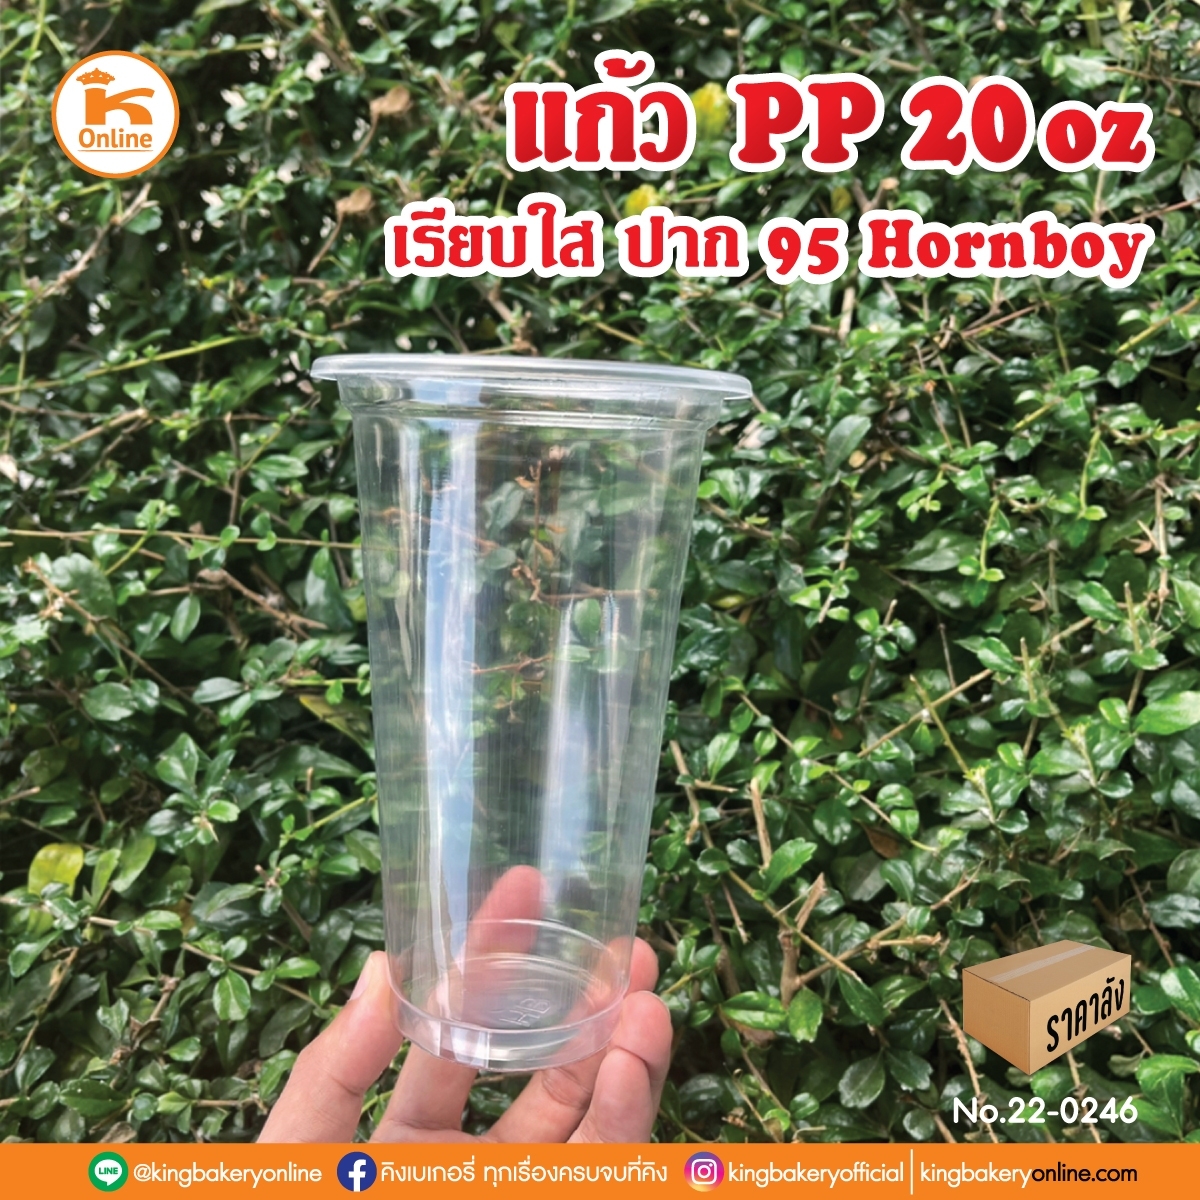 แก้ว PP 20 oz. เรียบใส ปาก 95 Hronboy (ลังx20แถว)